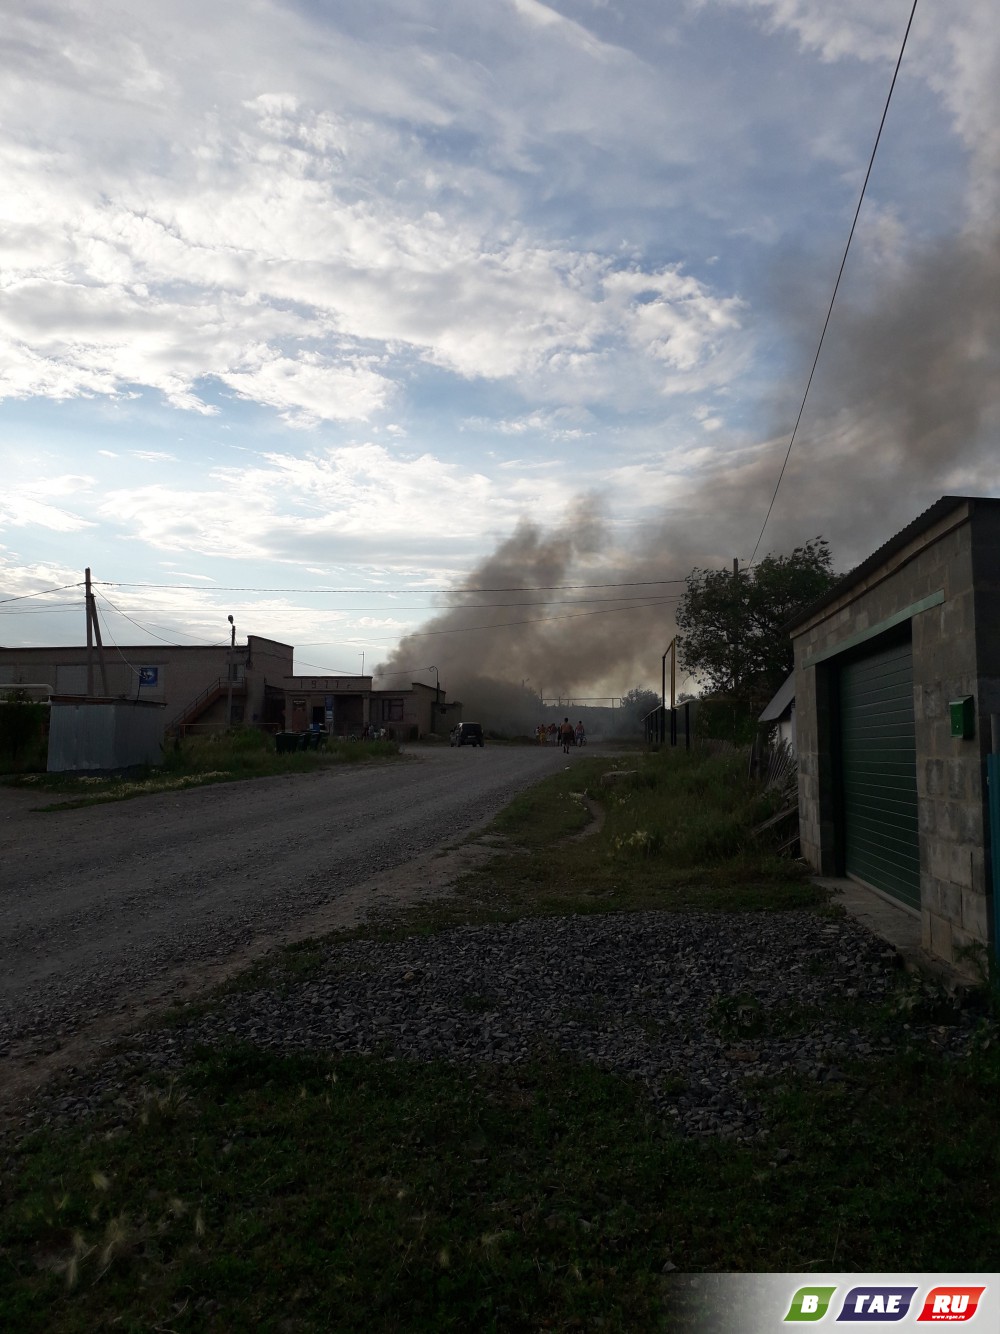 Пожар в п. Калиновка по ул. Курортной